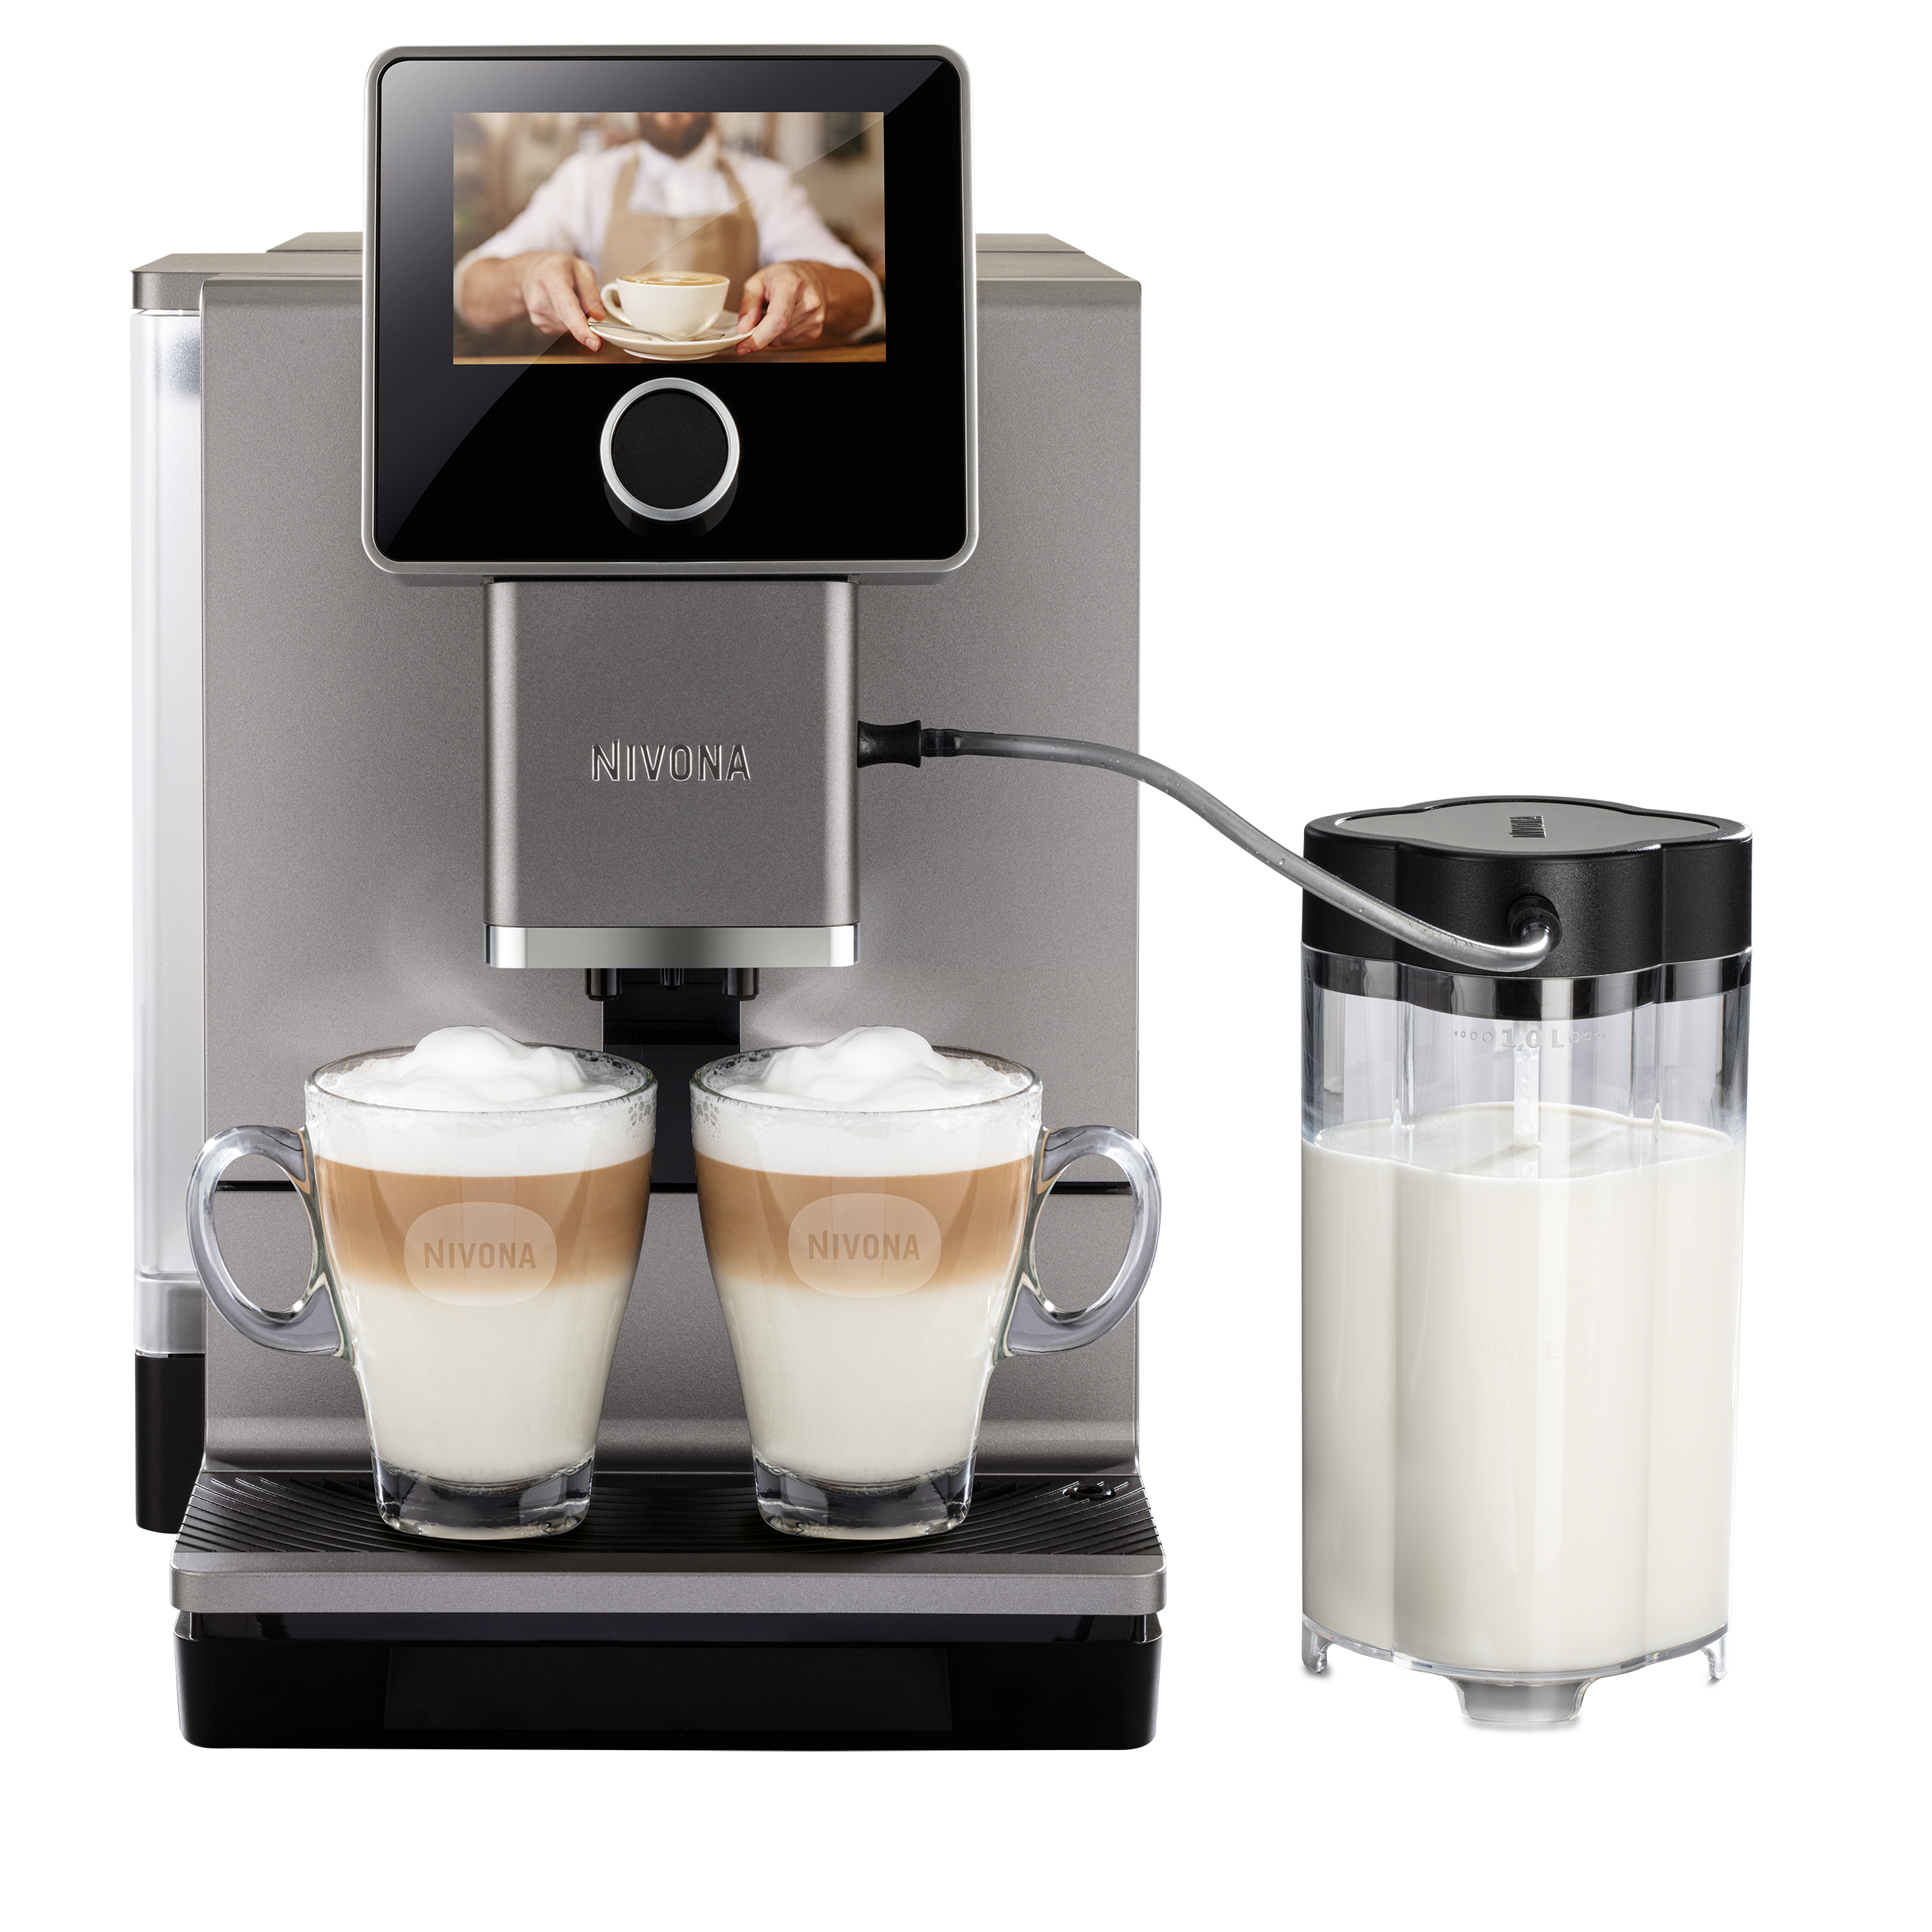 NICR 970 CafeRomatica fully automatic espresso machine